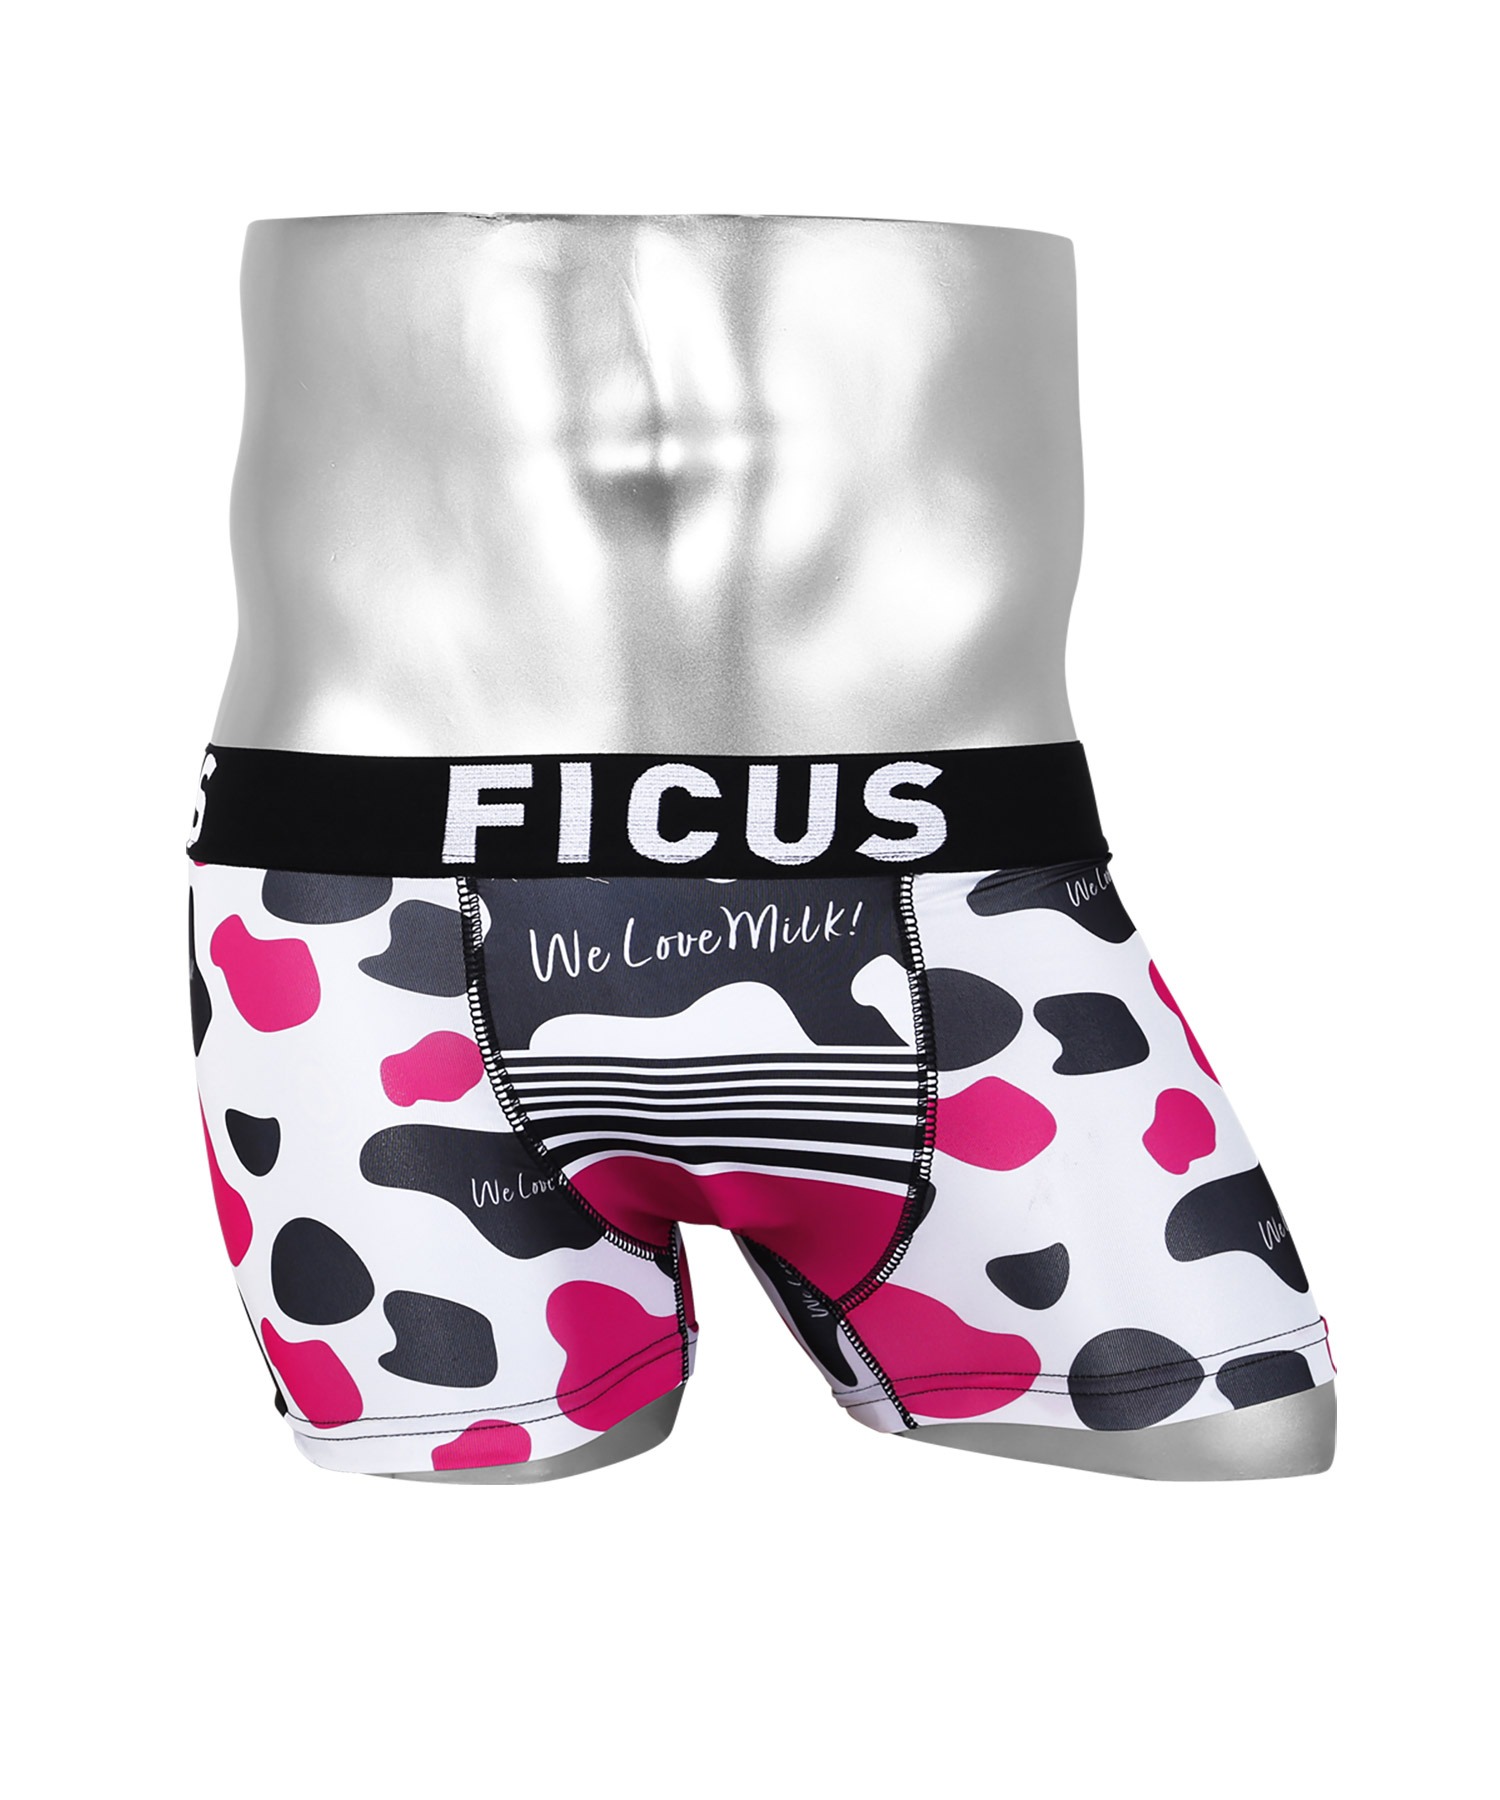 FICUSFICUS 100%正規品 フィークス 無料 ボクサーパンツ メンズ アンダーウェア 下着 アニマル柄 ホルスタイン 牛 動物 ツルツル